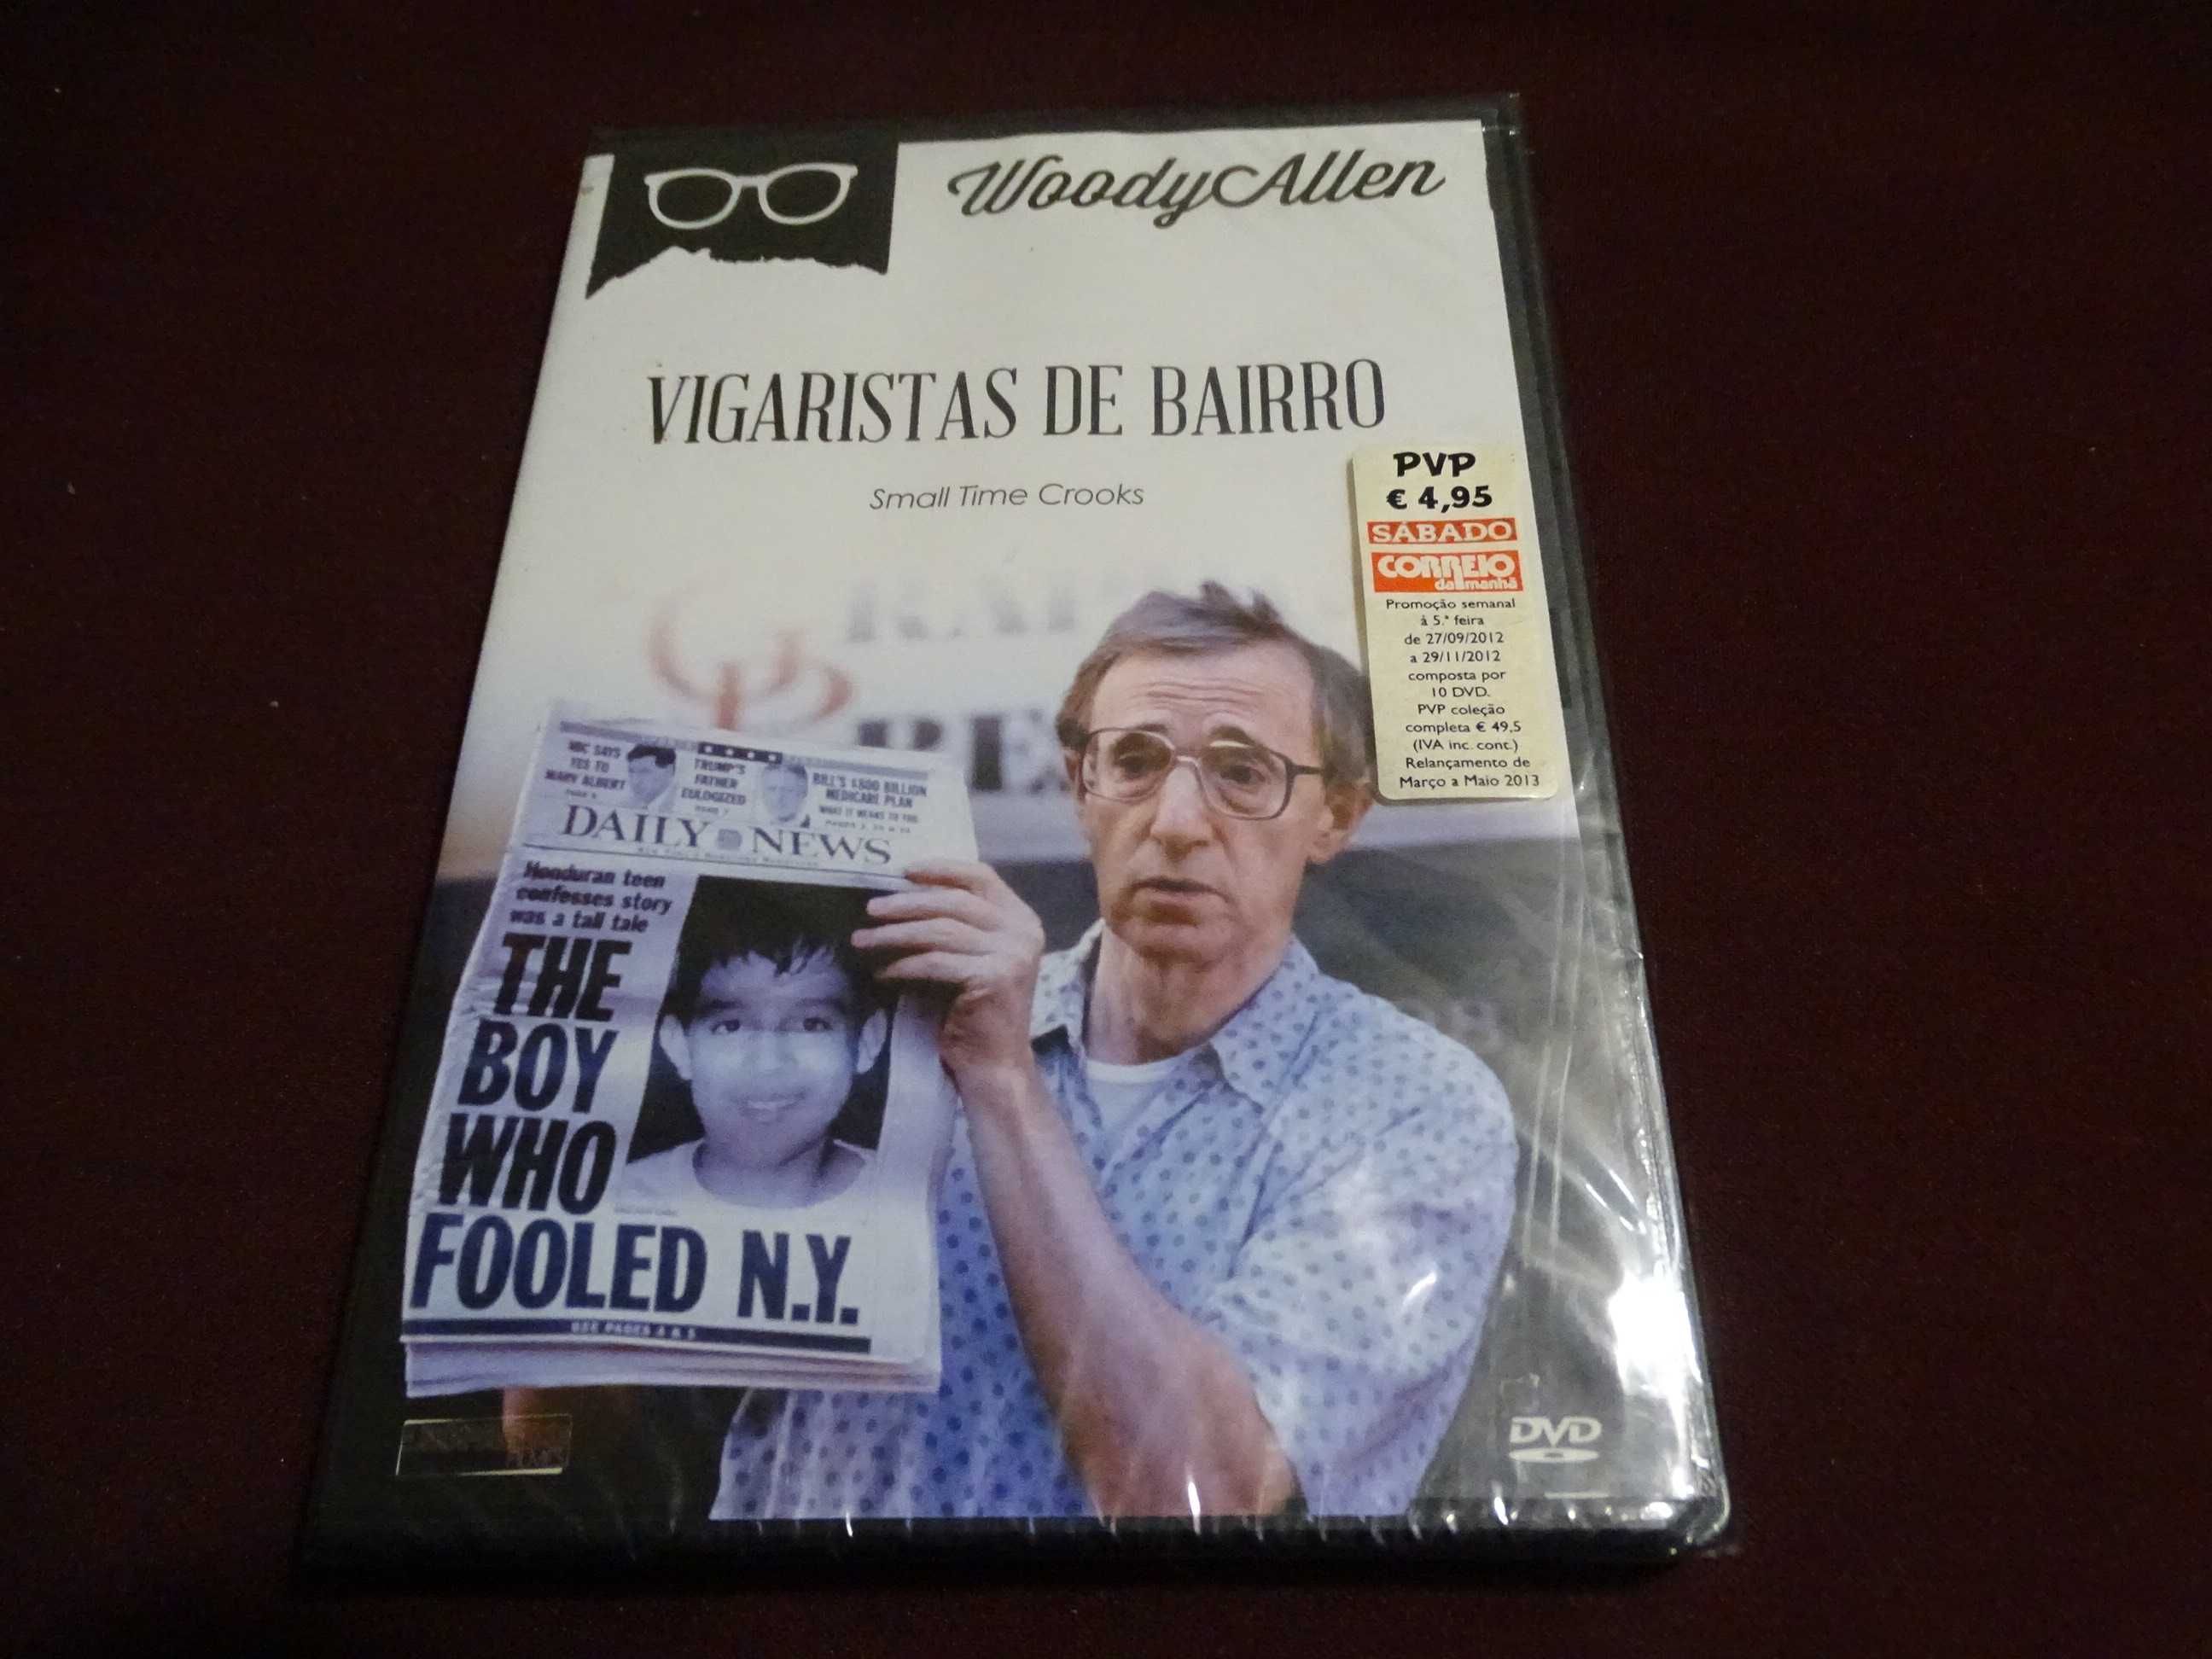 DVD-Vigaristas de bairro-Woodie Allen-selado